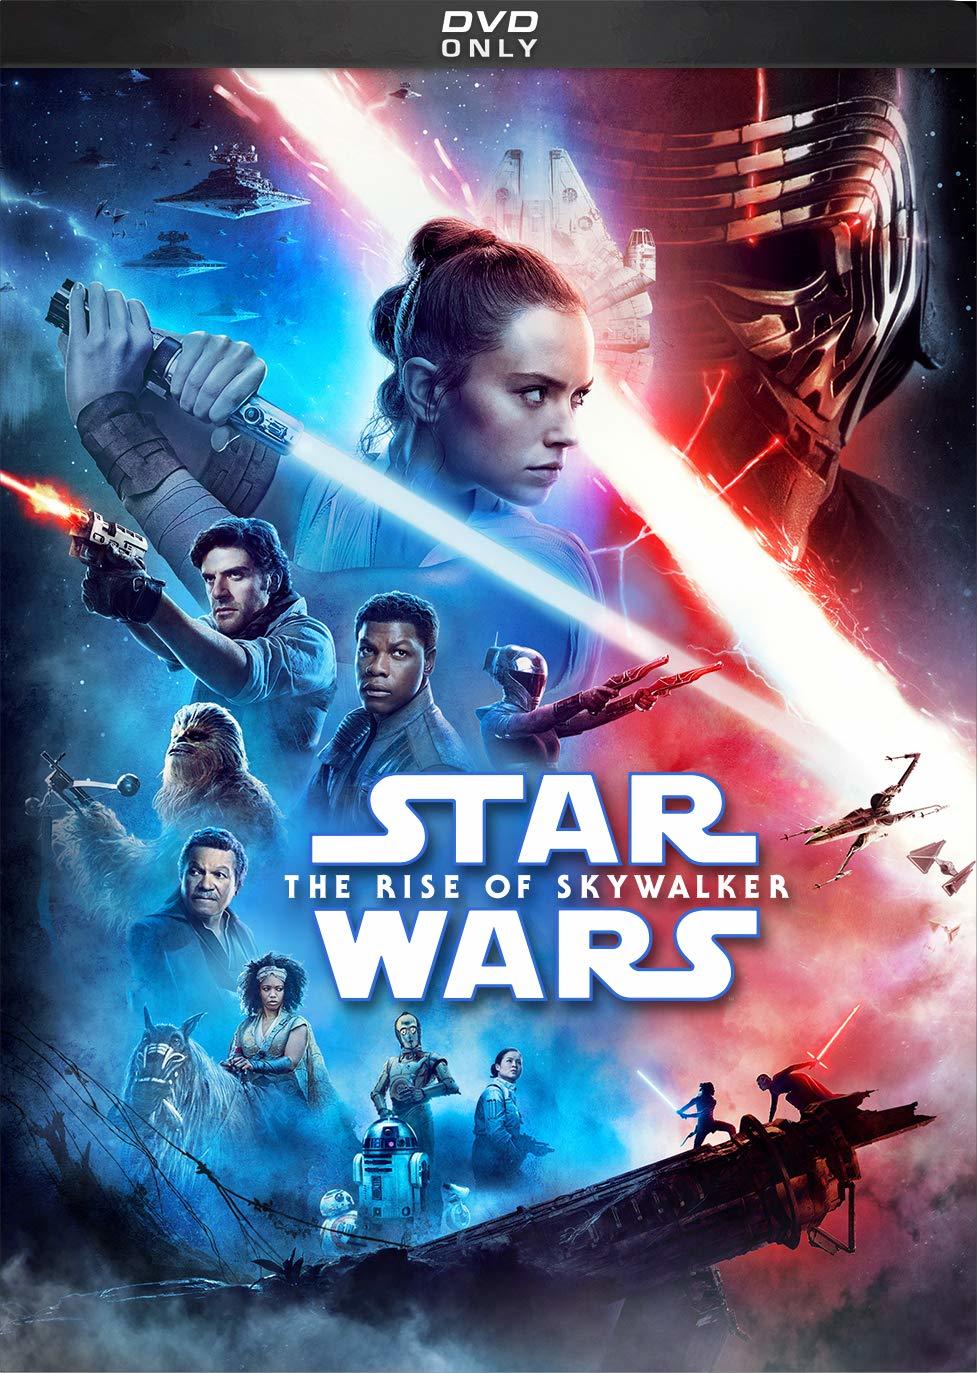 Star Wars: Episode IX - The Rise of Skywalker (2019) Star Wars: El Ascenso de Skywalker (2019) [AC3 5.1 + SRT] [DVD-Rip] [GOOGLEDRIVE*] 149225_front